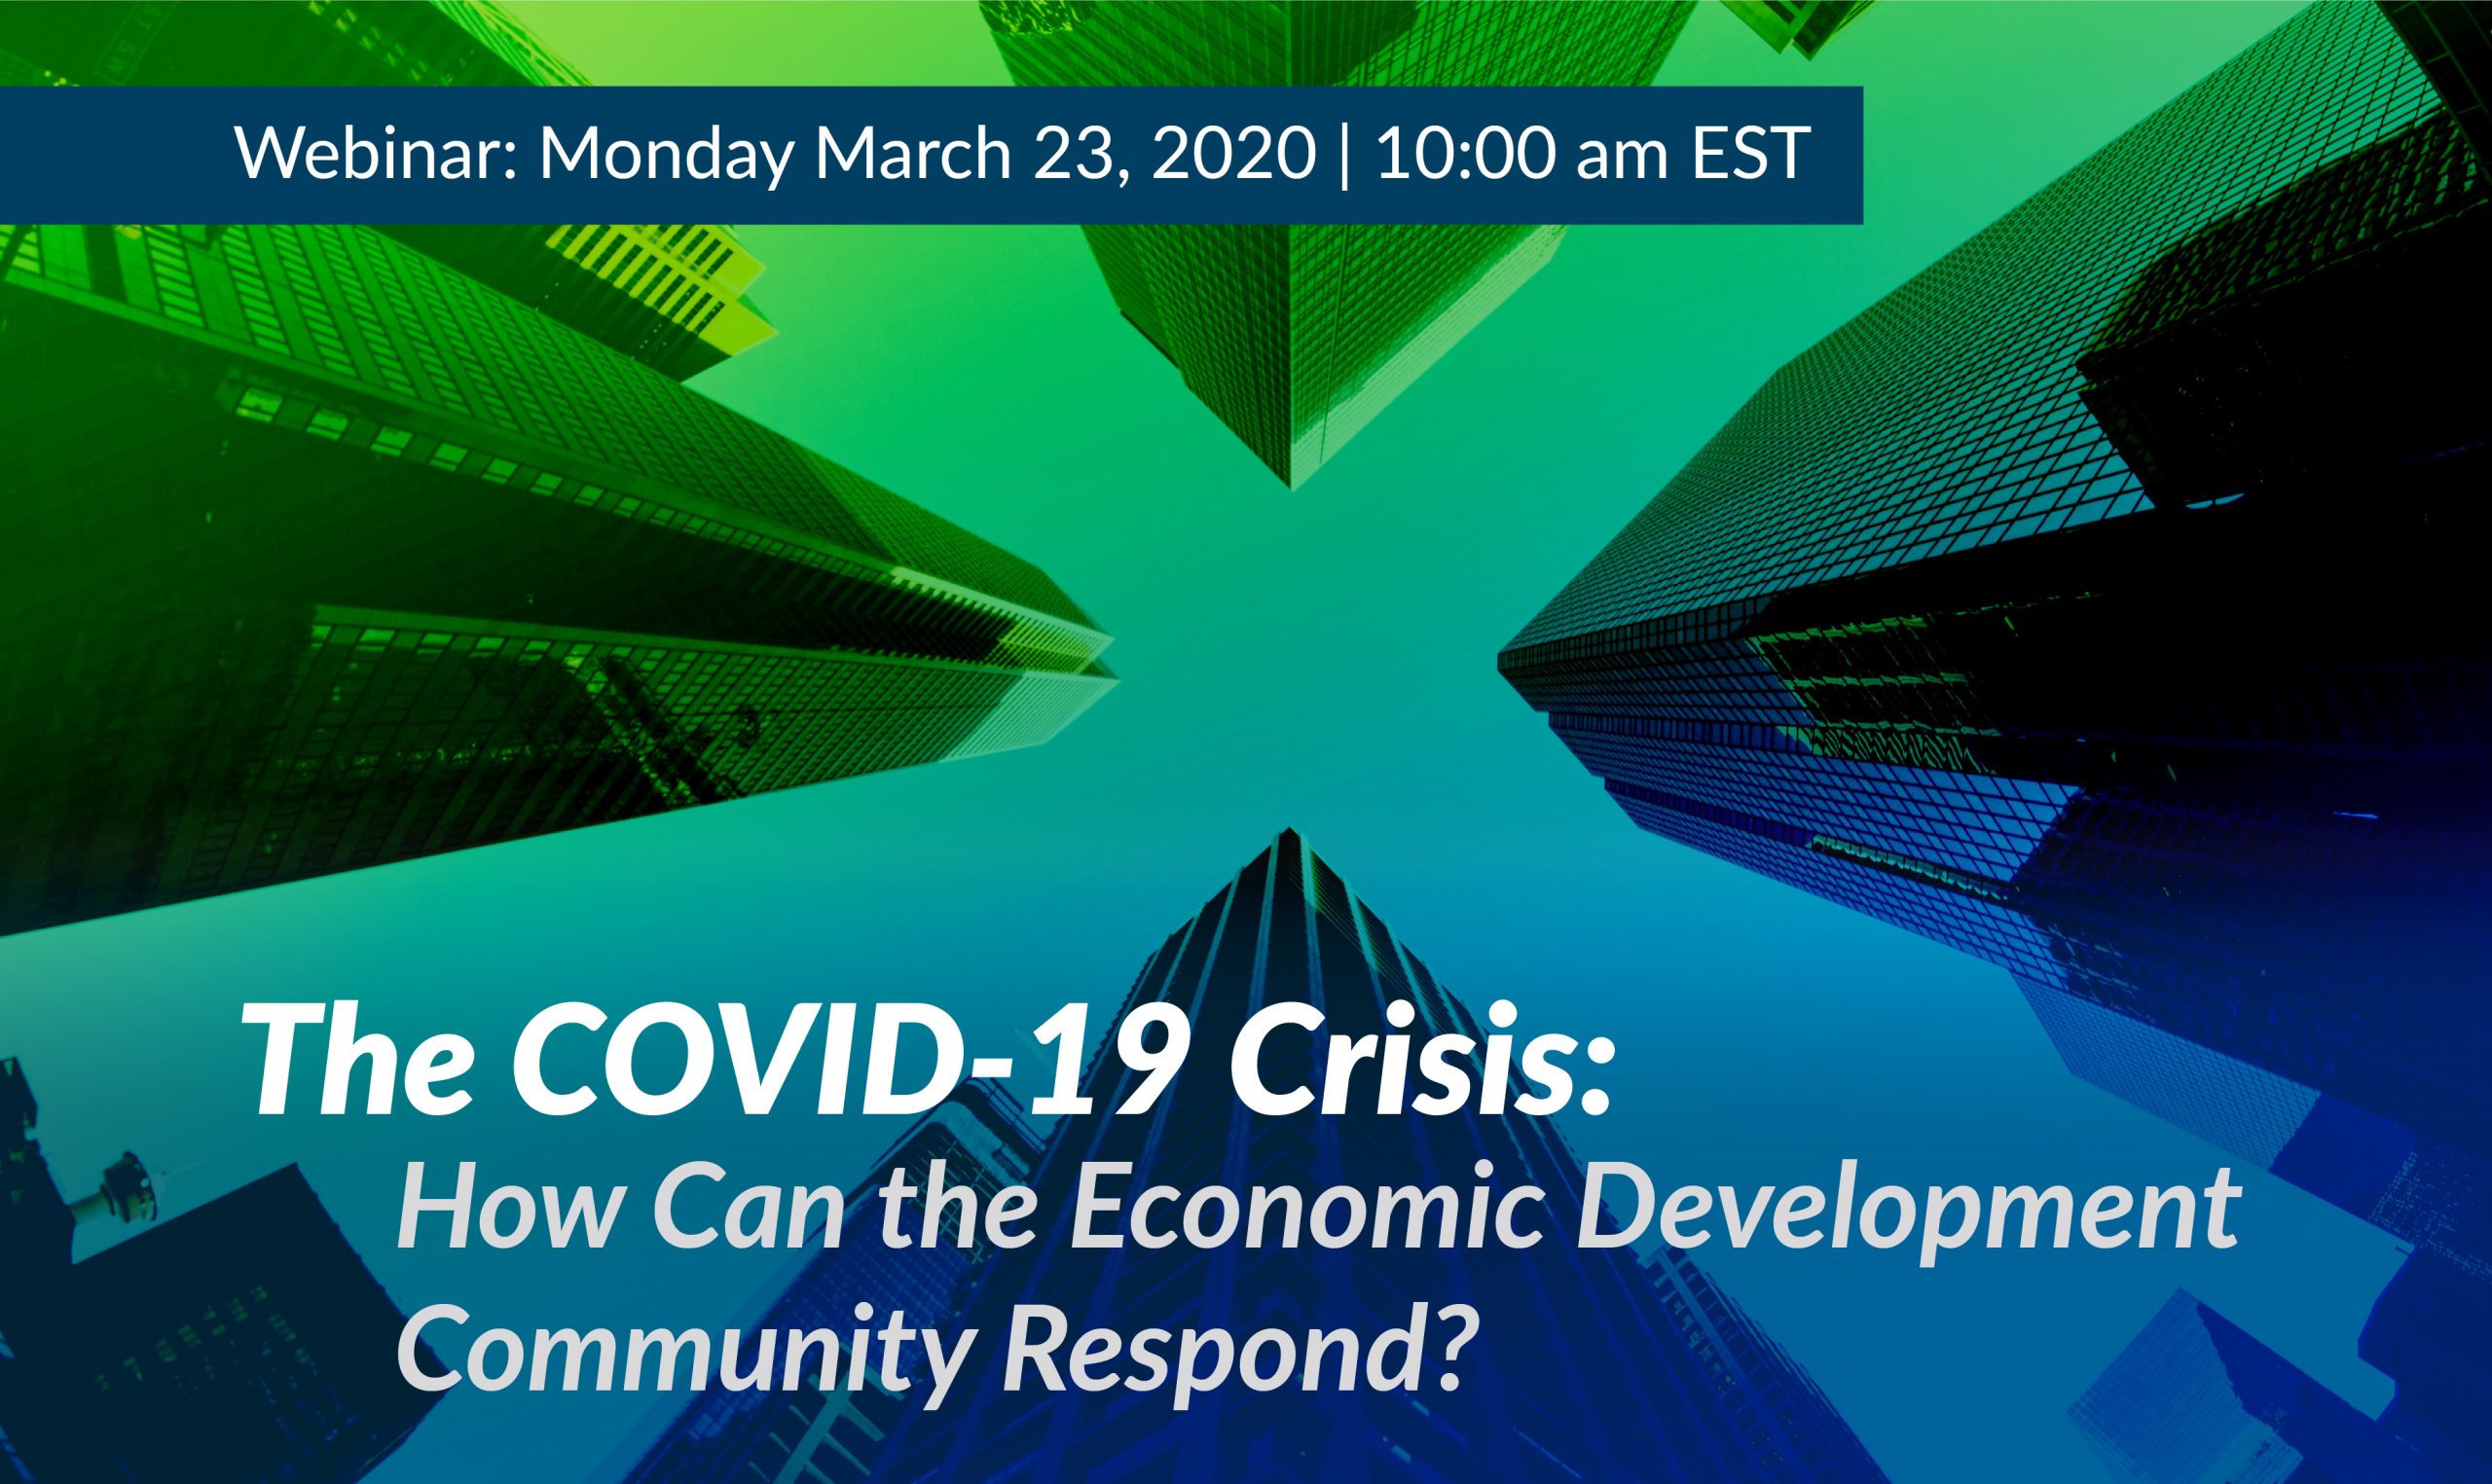 COVID-19 and the Economic Development Community